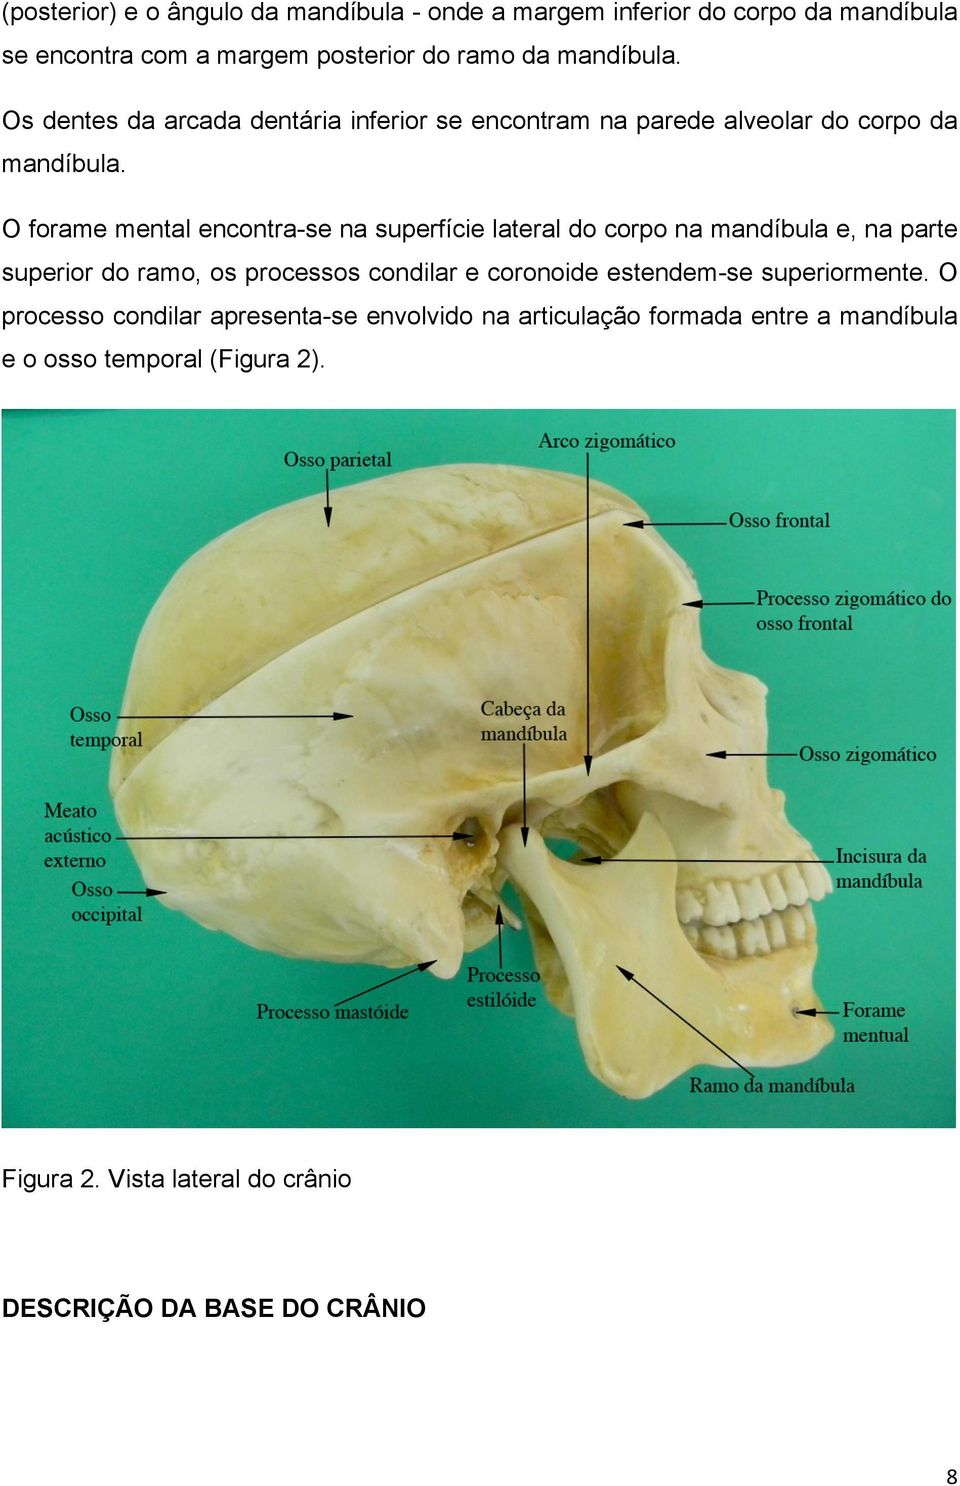 O forame mental encontra-se na superfície lateral do corpo na mandíbula e, na parte superior do ramo, os processos condilar e coronoide